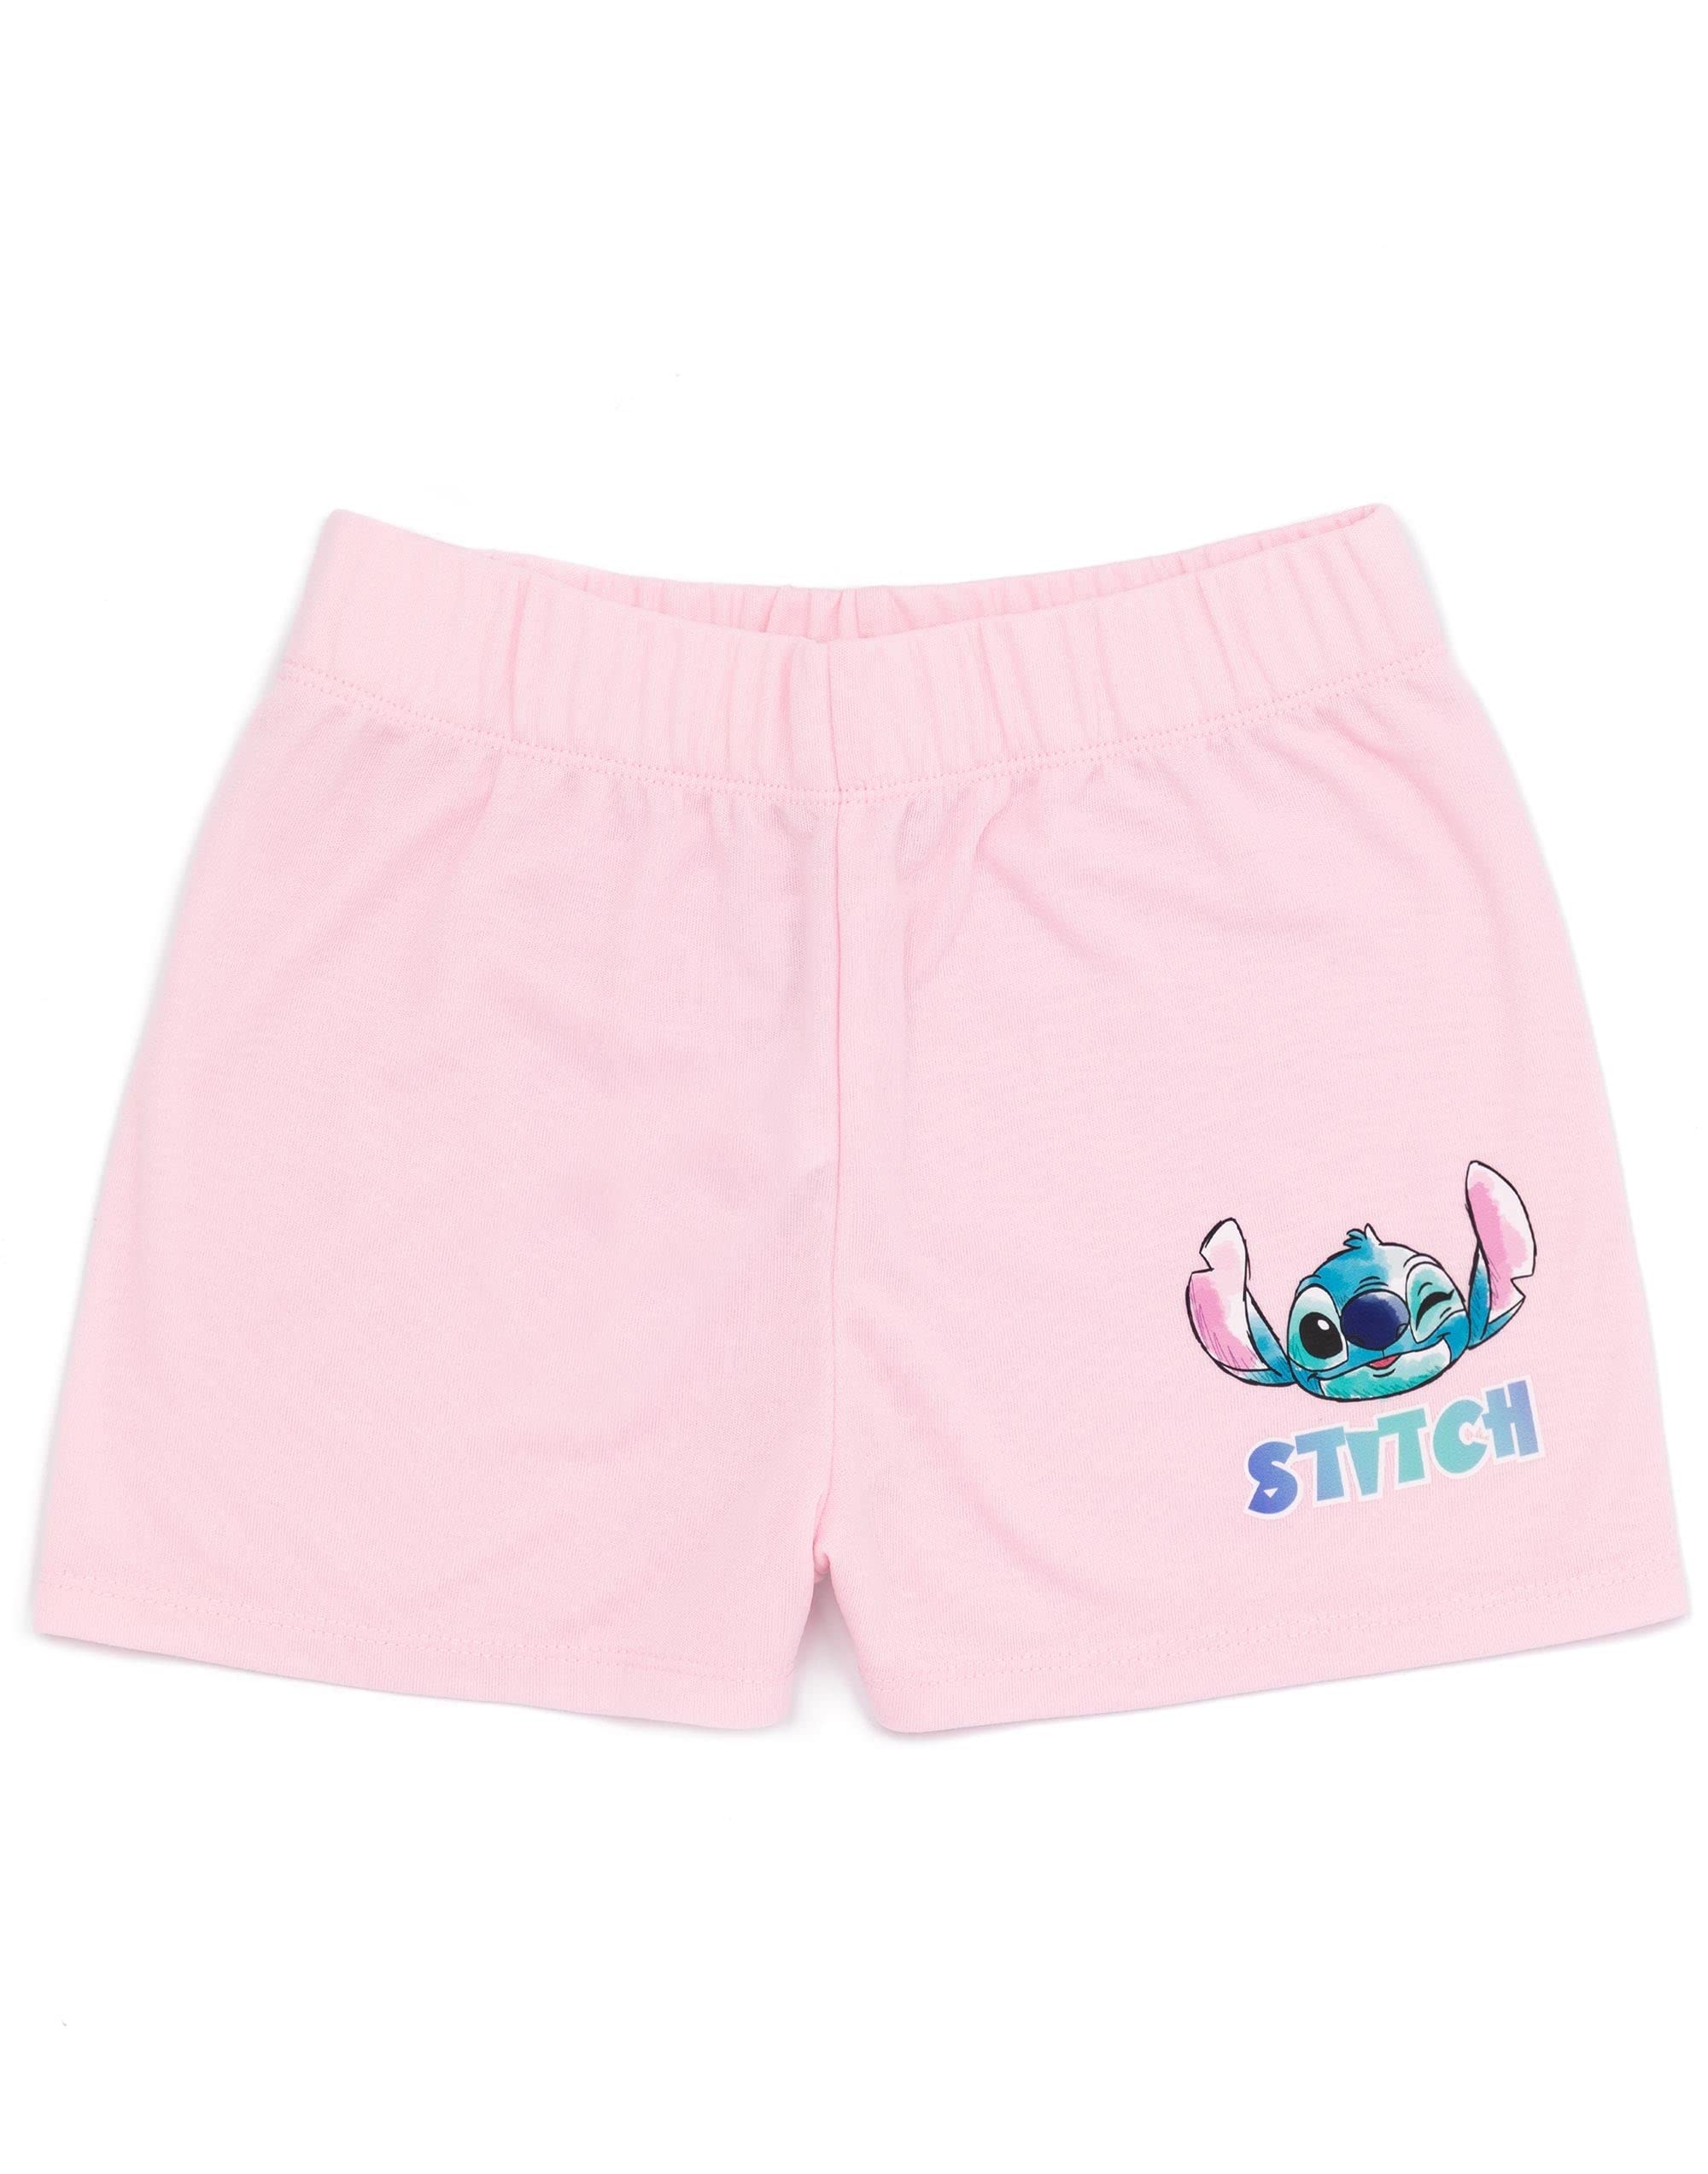 Disney Lilo And Stitch Girls 2 Pack Pyjamas Kids Just Chill Animated Alien T-Shirts Shorts Set Sleepwear